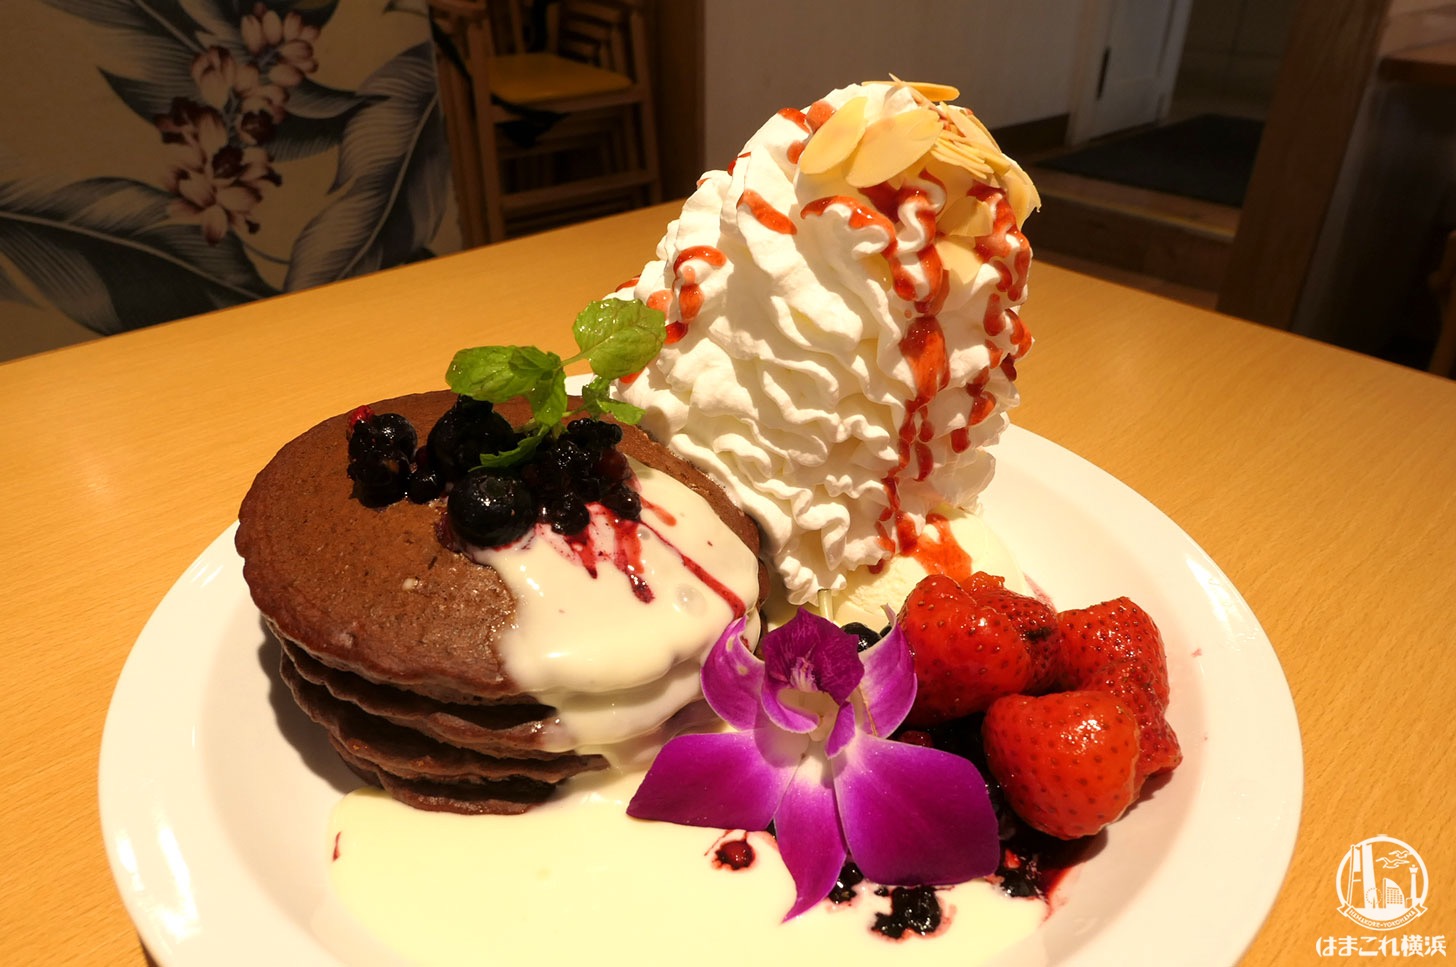 エッグスンシングス 横浜山下公園店が2020年10月31日閉店 店舗限定パンケーキ食べてきた